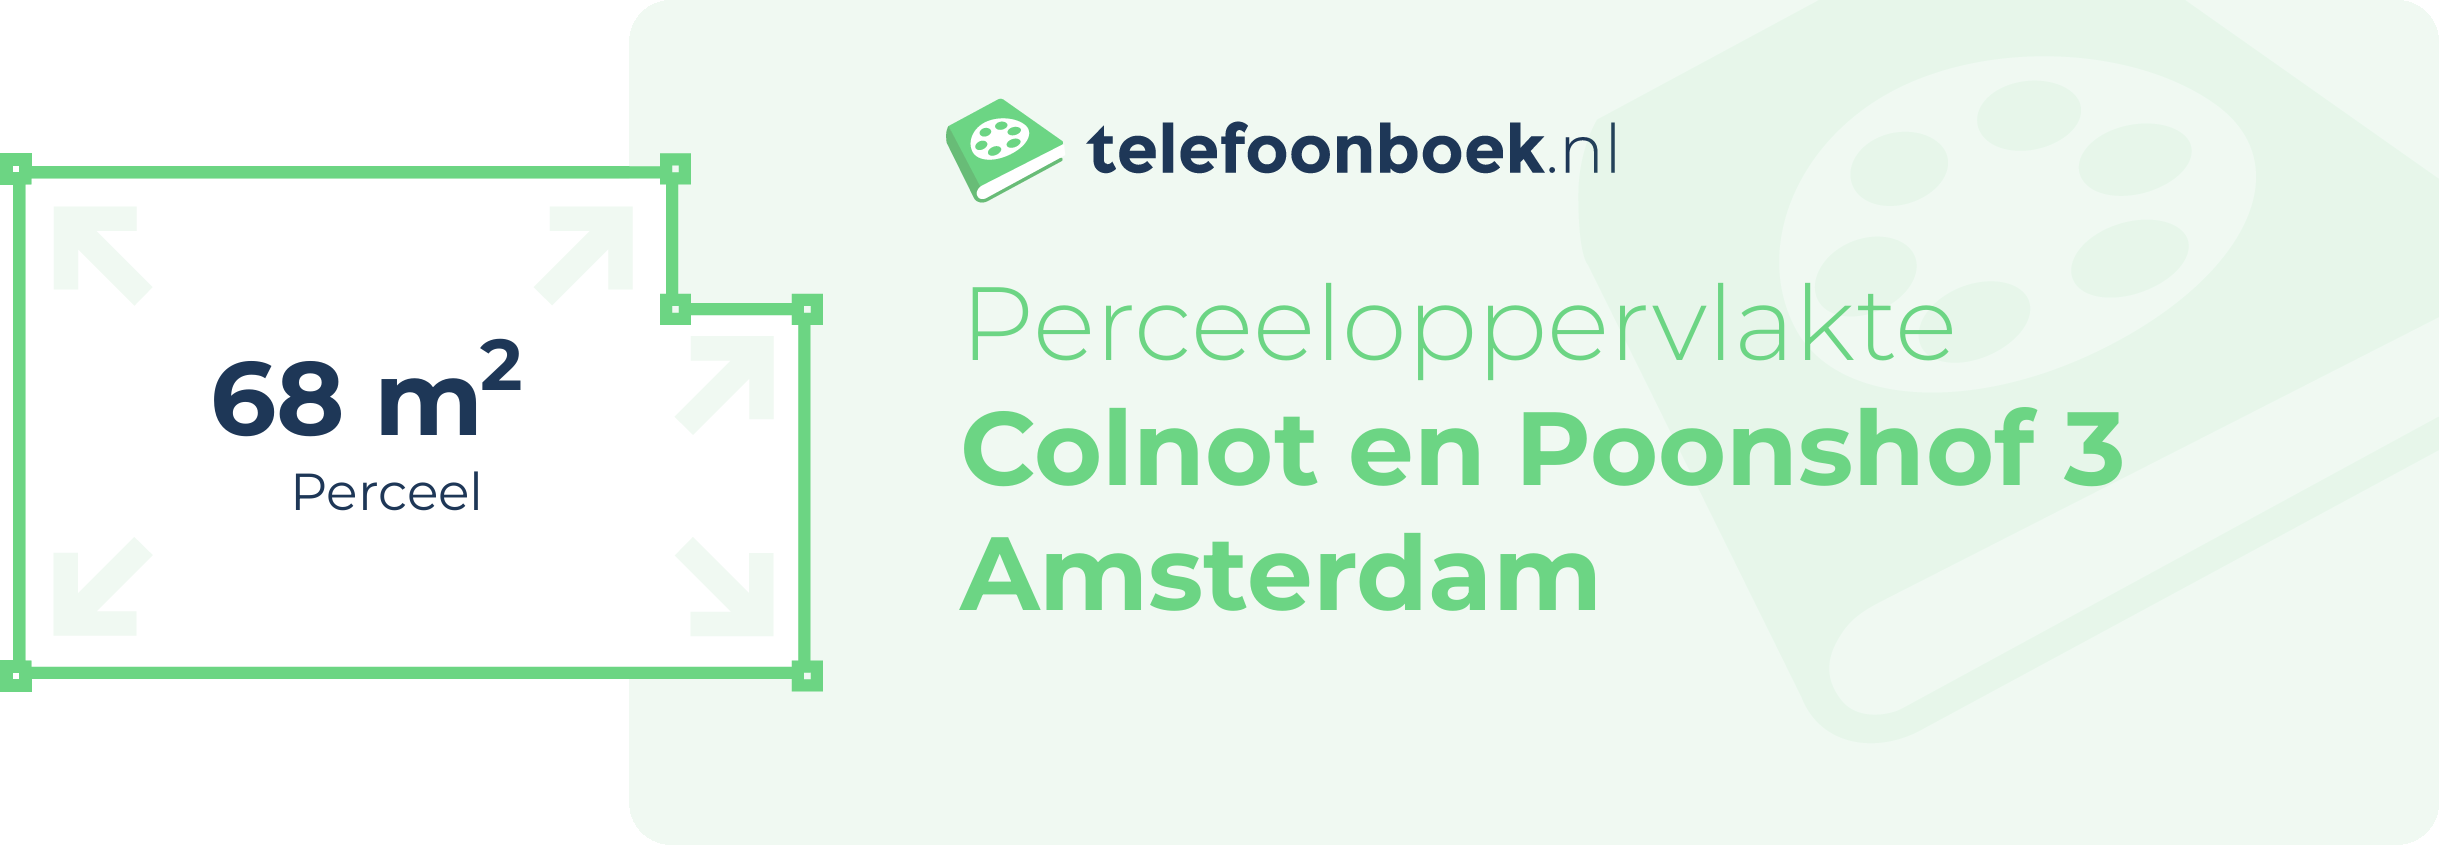 Perceeloppervlakte Colnot En Poonshof 3 Amsterdam